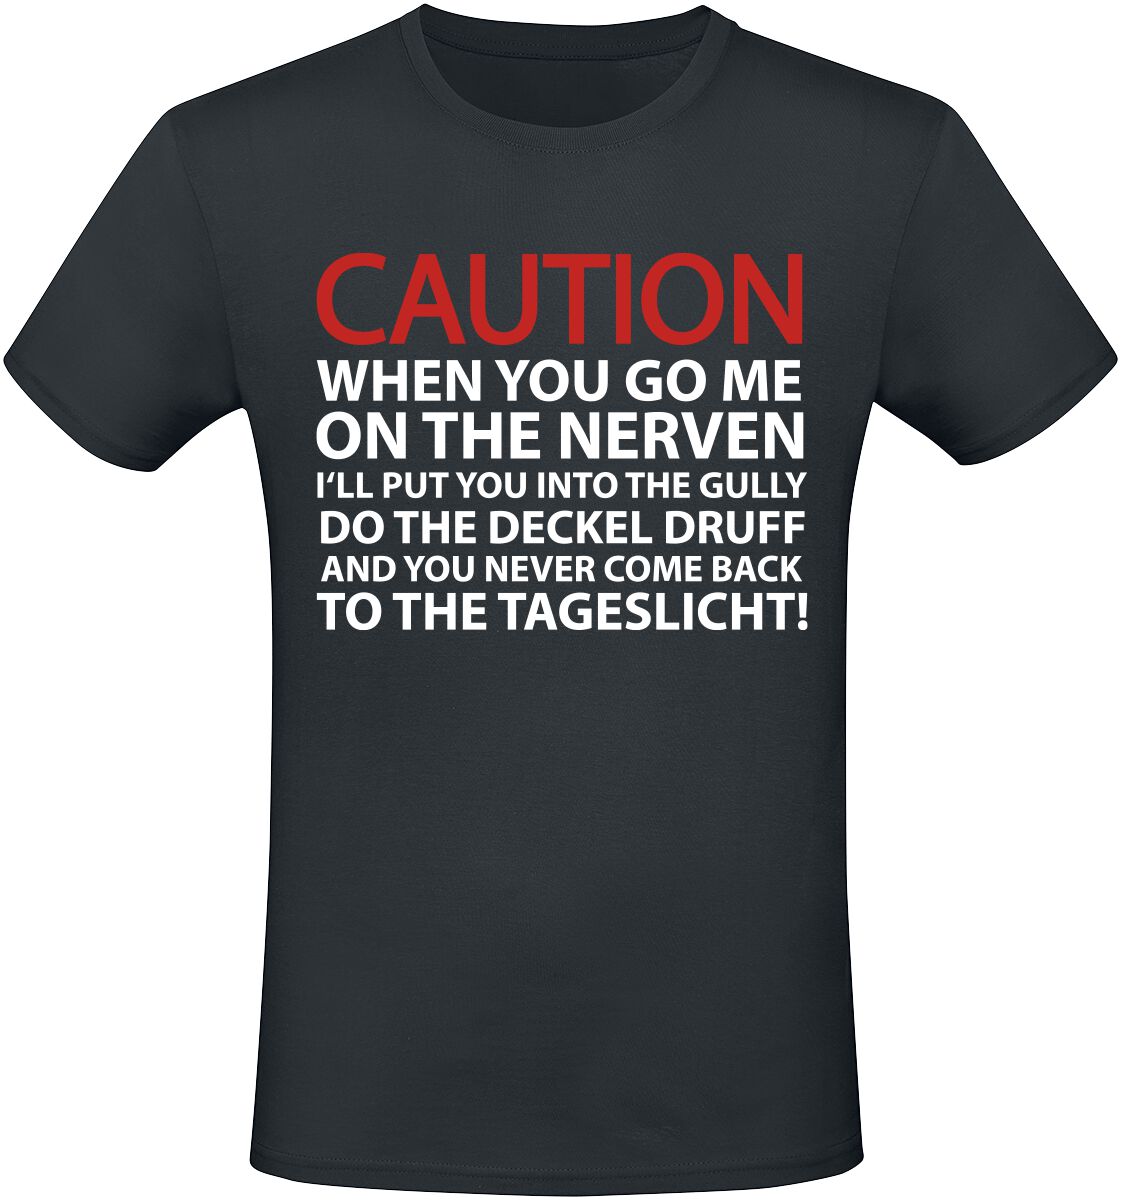 Sprüche T-Shirt - Caution - M bis 3XL - für Männer - Größe L - schwarz